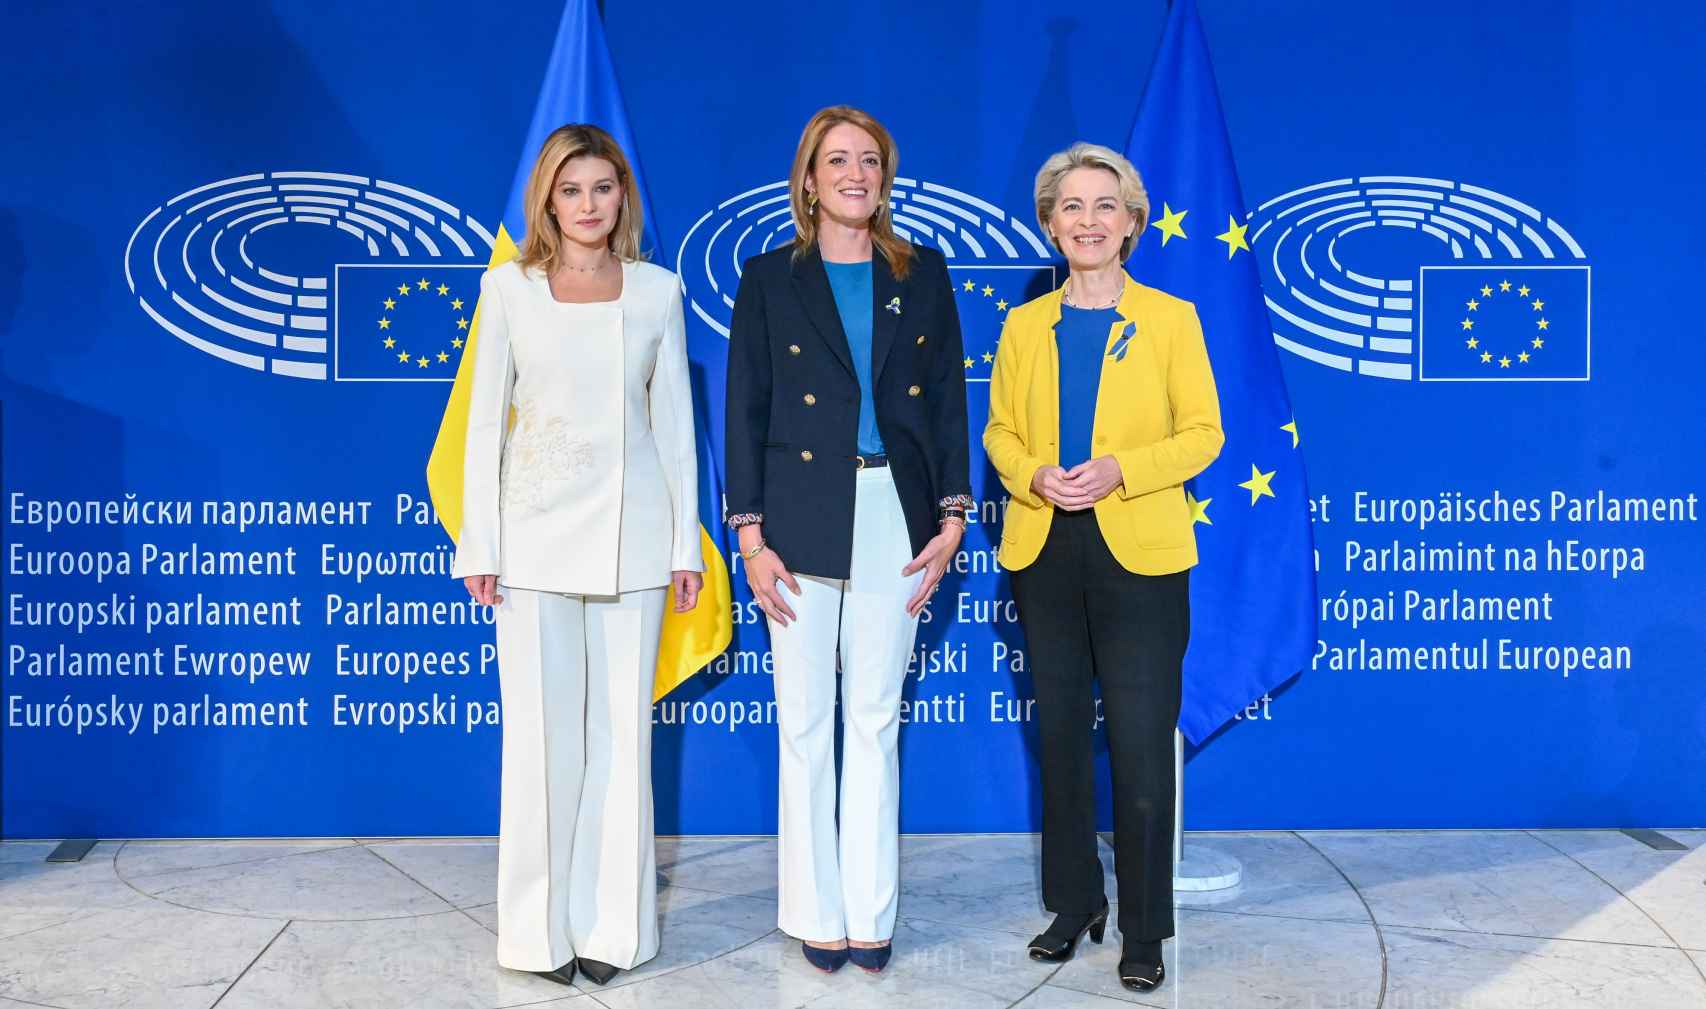 De izquierda a derecha, Olena Zelenska, primera dama de Ucrania e invitada al Debate, junto con Roberta Metsola, presidenta del Parlamento Europeo y Ursula von der Leyen, presidenta de la Comisión Europea.